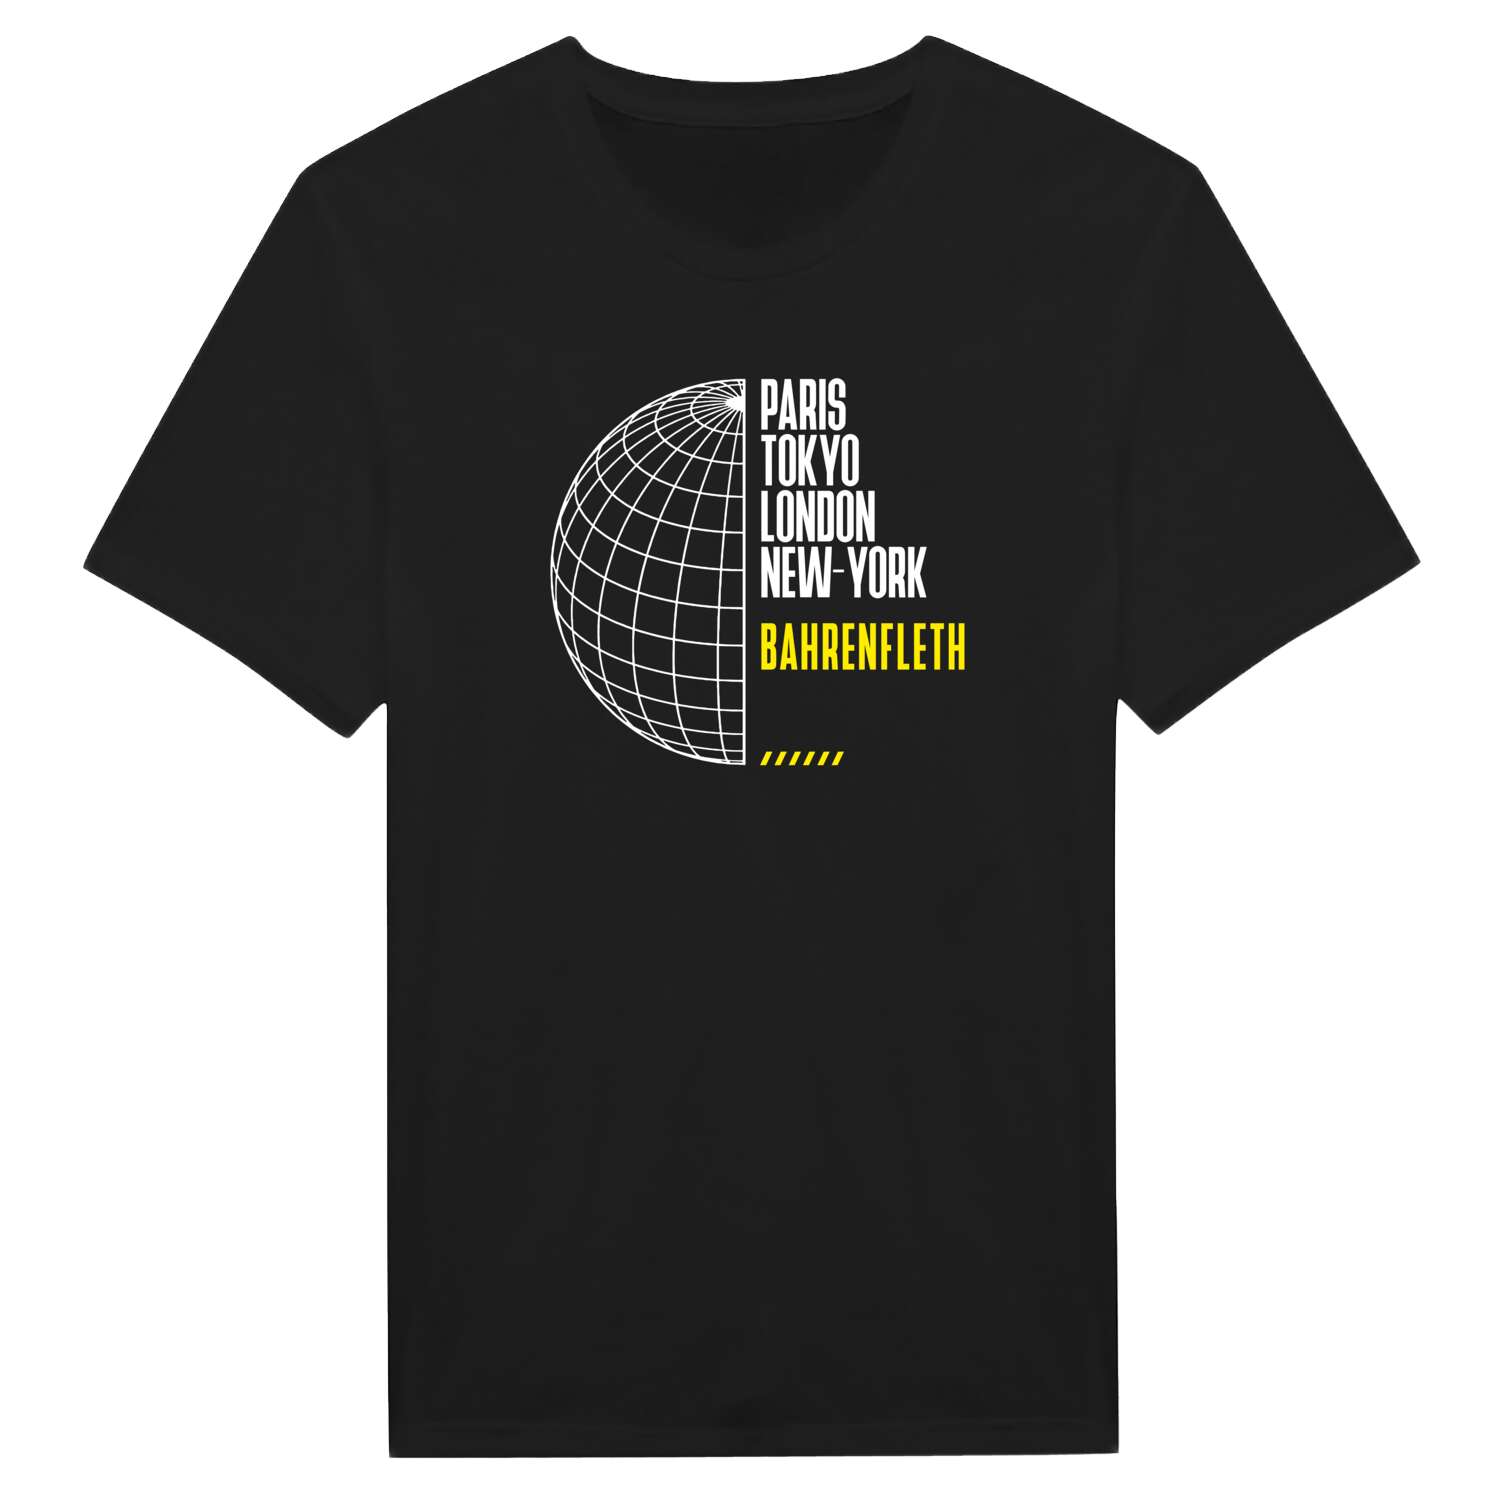 Bahrenfleth T-Shirt »Paris Tokyo London«